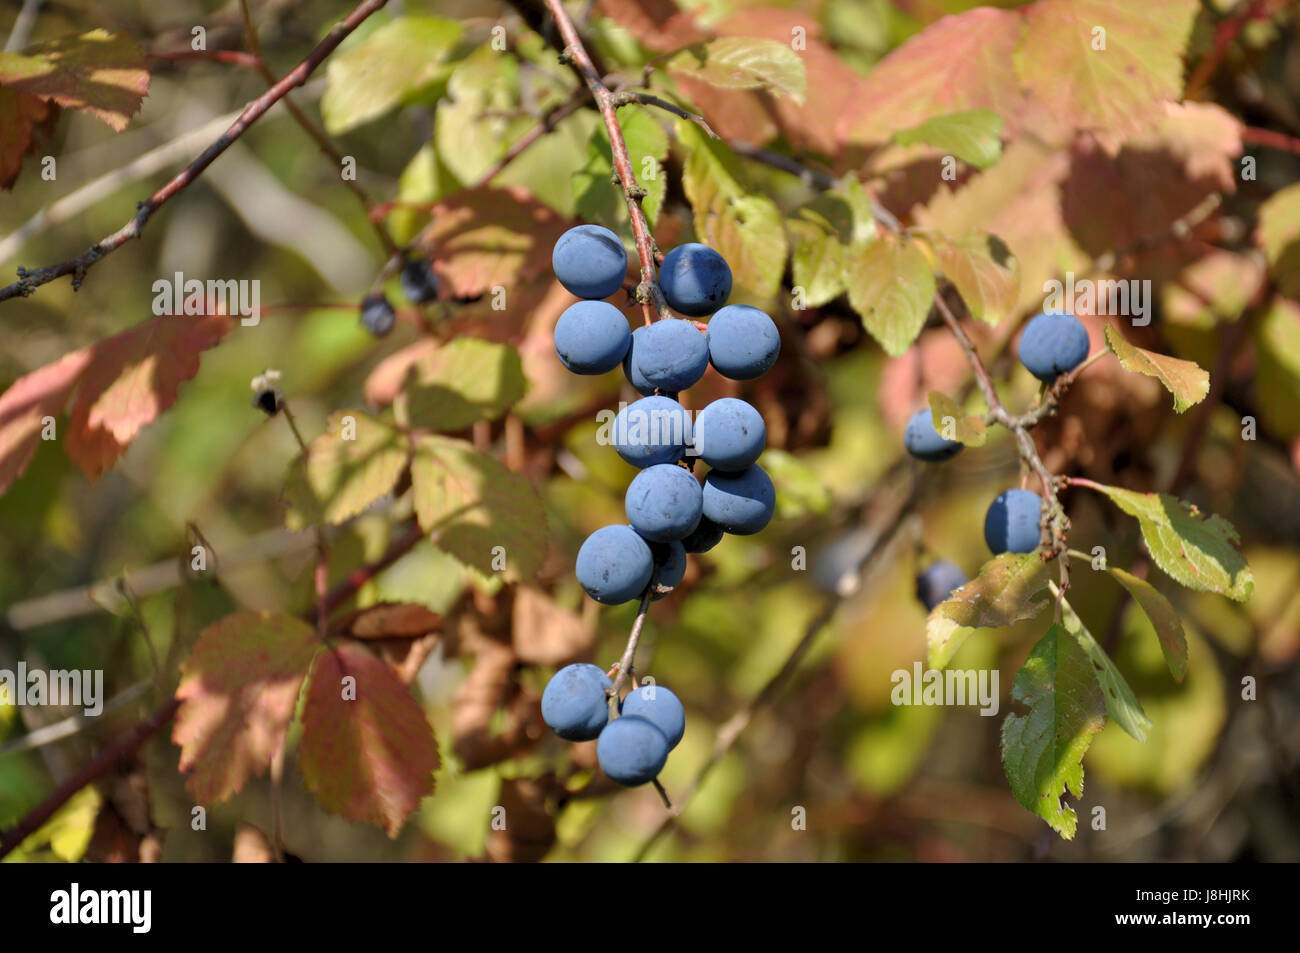 Baum, Frucht, Strauch, Busch, Berry, Schlehe, Pflanze, blau, farbig, bunt  Stockfotografie - Alamy